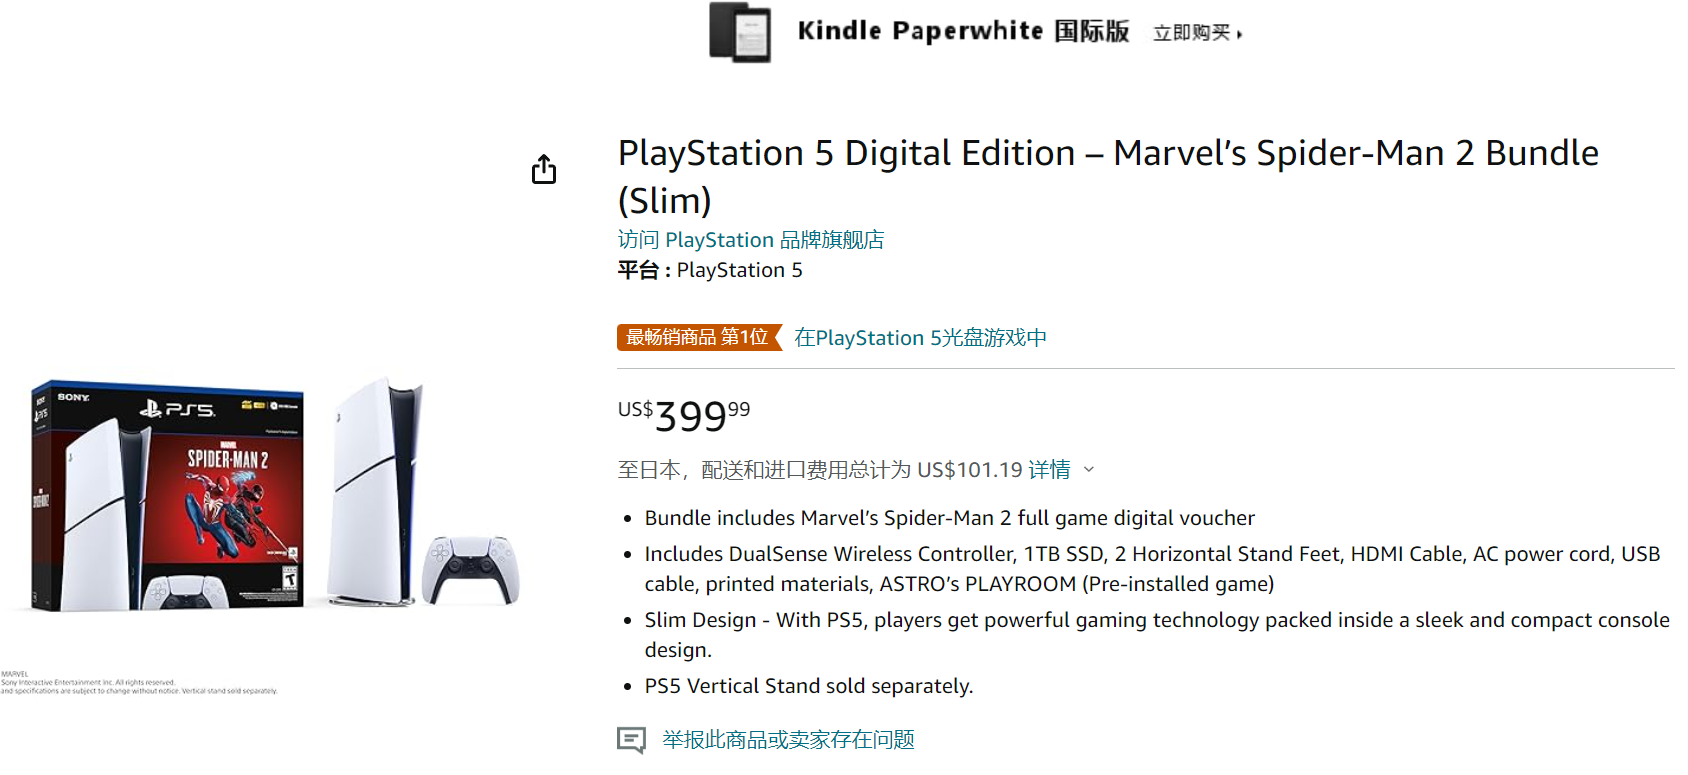 《漫威蜘蛛侠2》PS5捆绑包上架亚马逊 卖价399好元